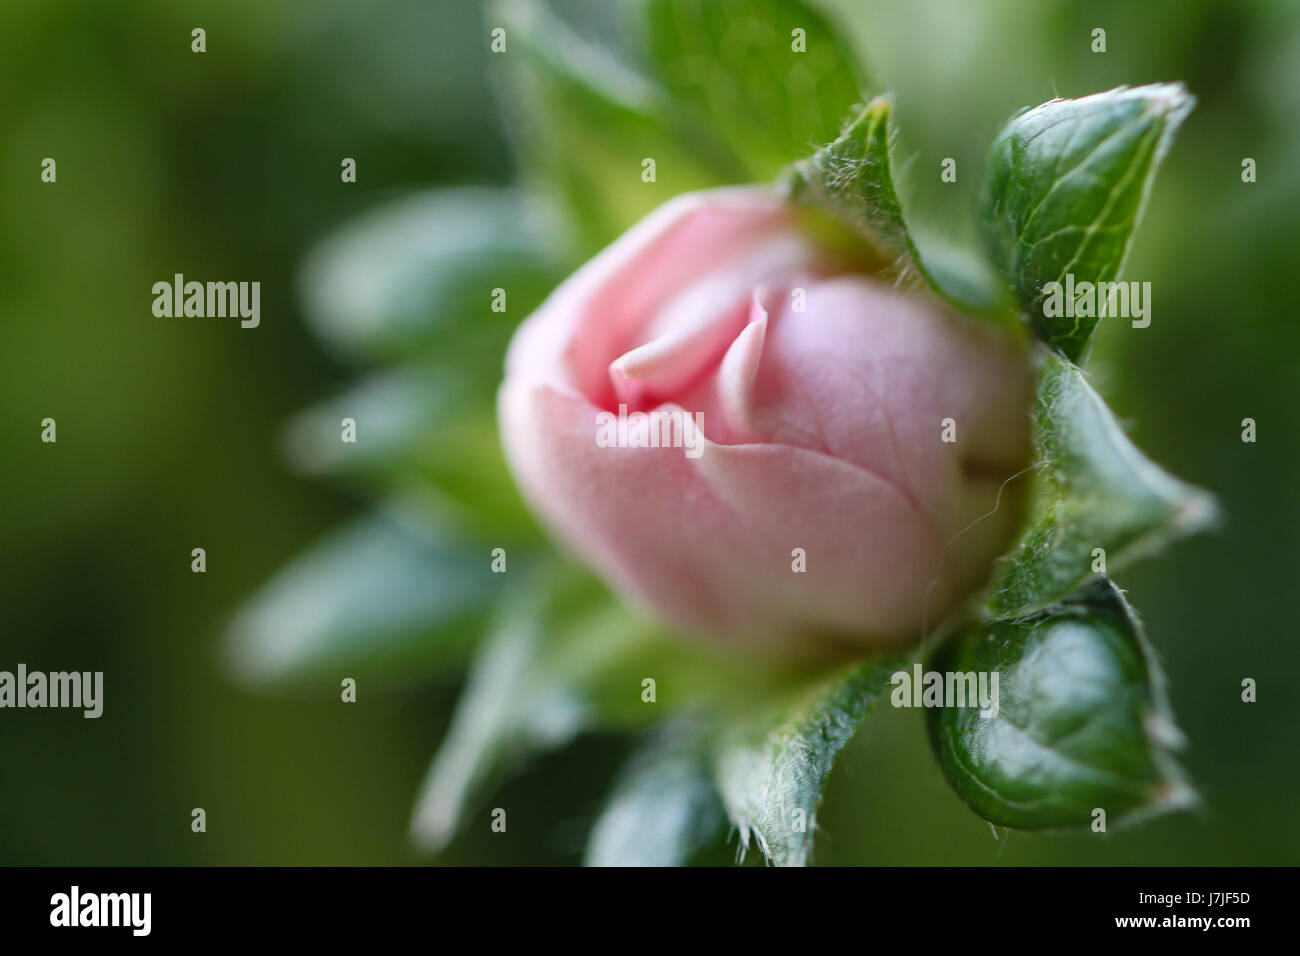 Primo piano di un ibrido fiore di fragola. Una rosa-simili, delicato bocciolo di rosa viene visualizzato durante la fase di fioritura. Le fragole apparirà in circa un mese. Foto Stock